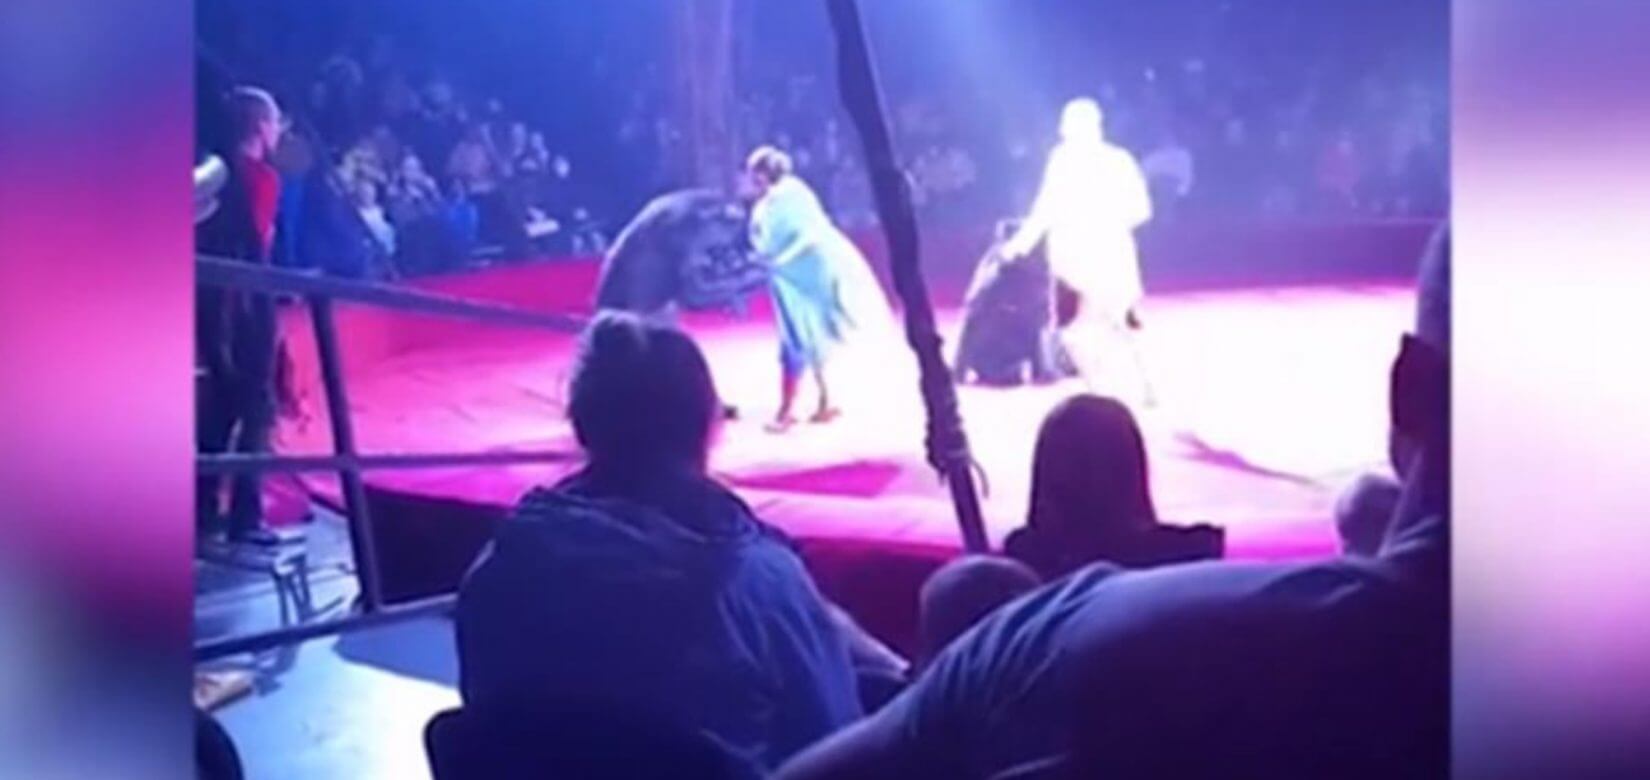 Τρομακτικές σκηνές: Αρκούδα επιτέθηκε σε έγκυο θηριοδαμαστή (βίντεο)